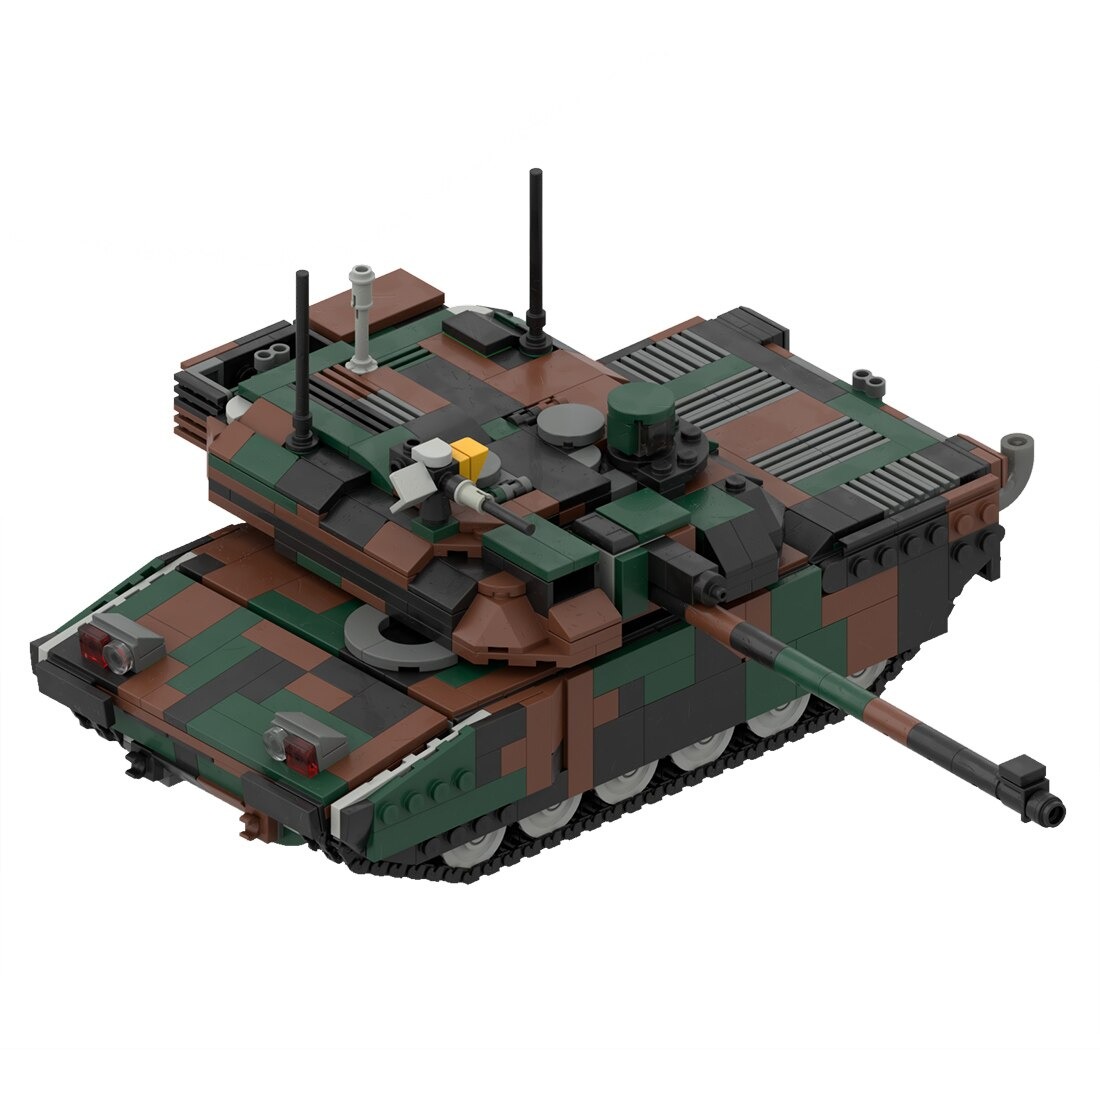 moc 34858 leclerc main battle tank model main 2 - SUPER18K Block